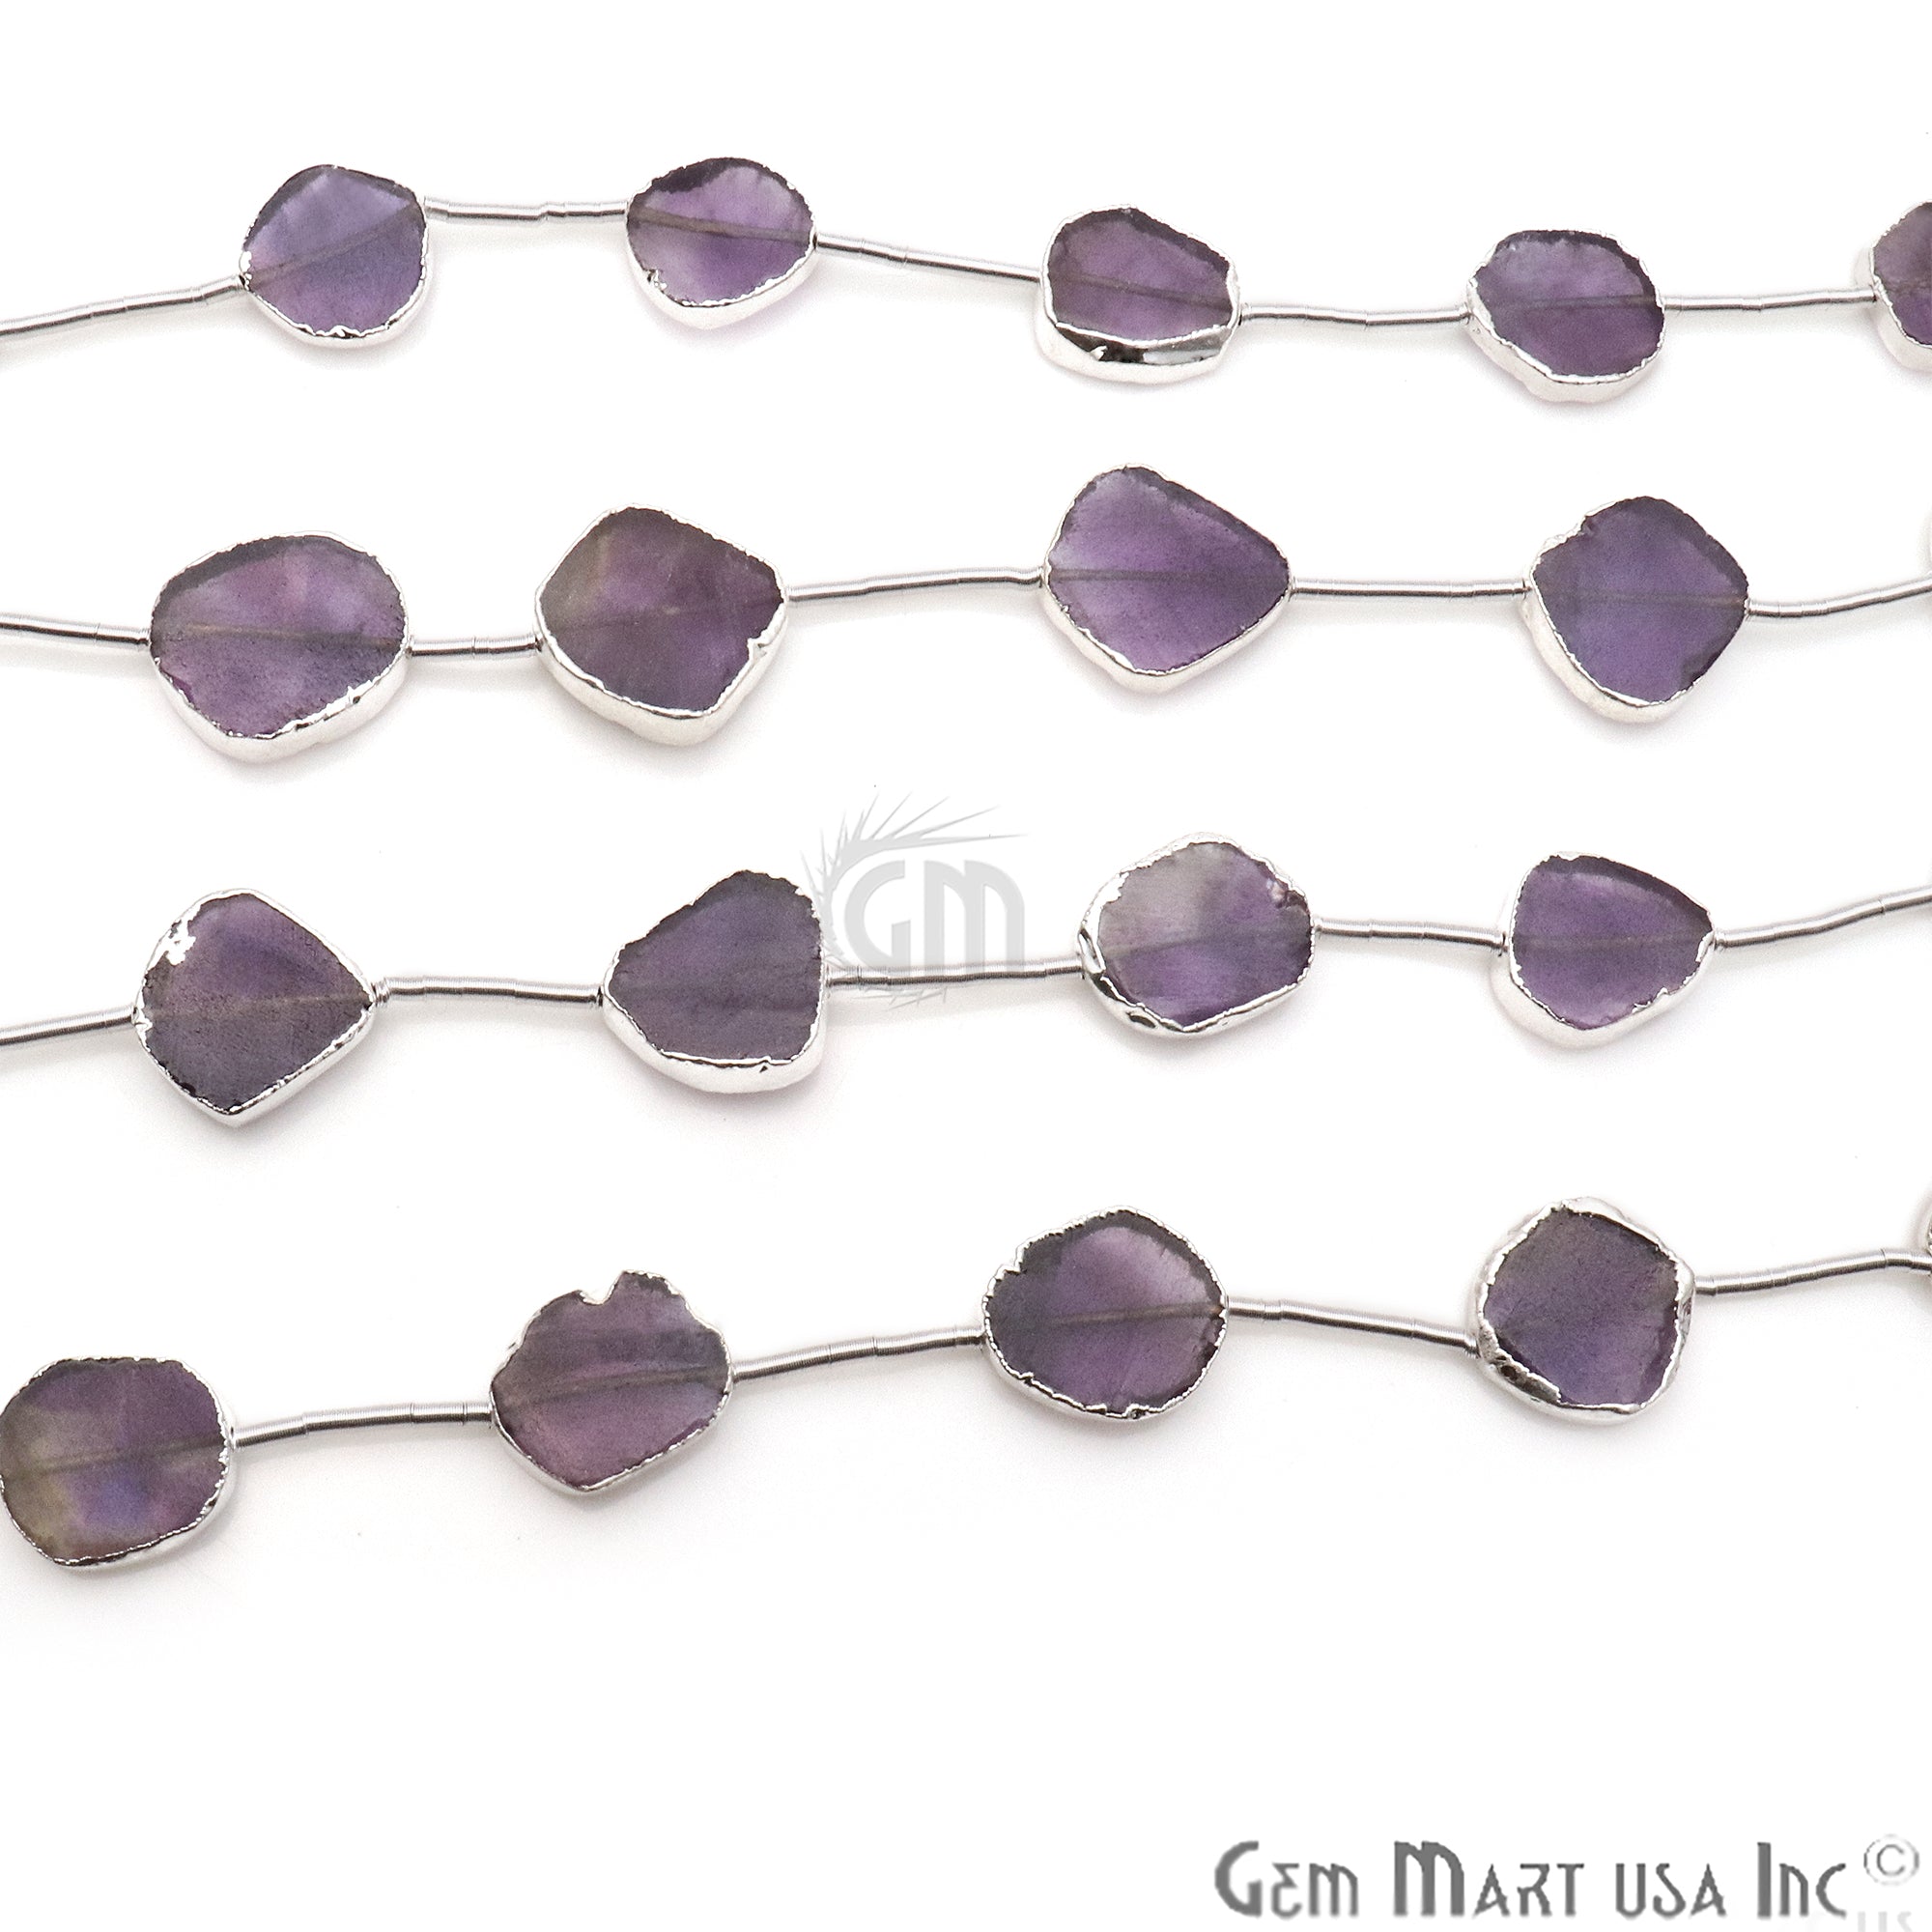 Amethyst Free Form 18x15mm Silver Edged Crafting Beads Gemstone Strands 9INCH - GemMartUSA